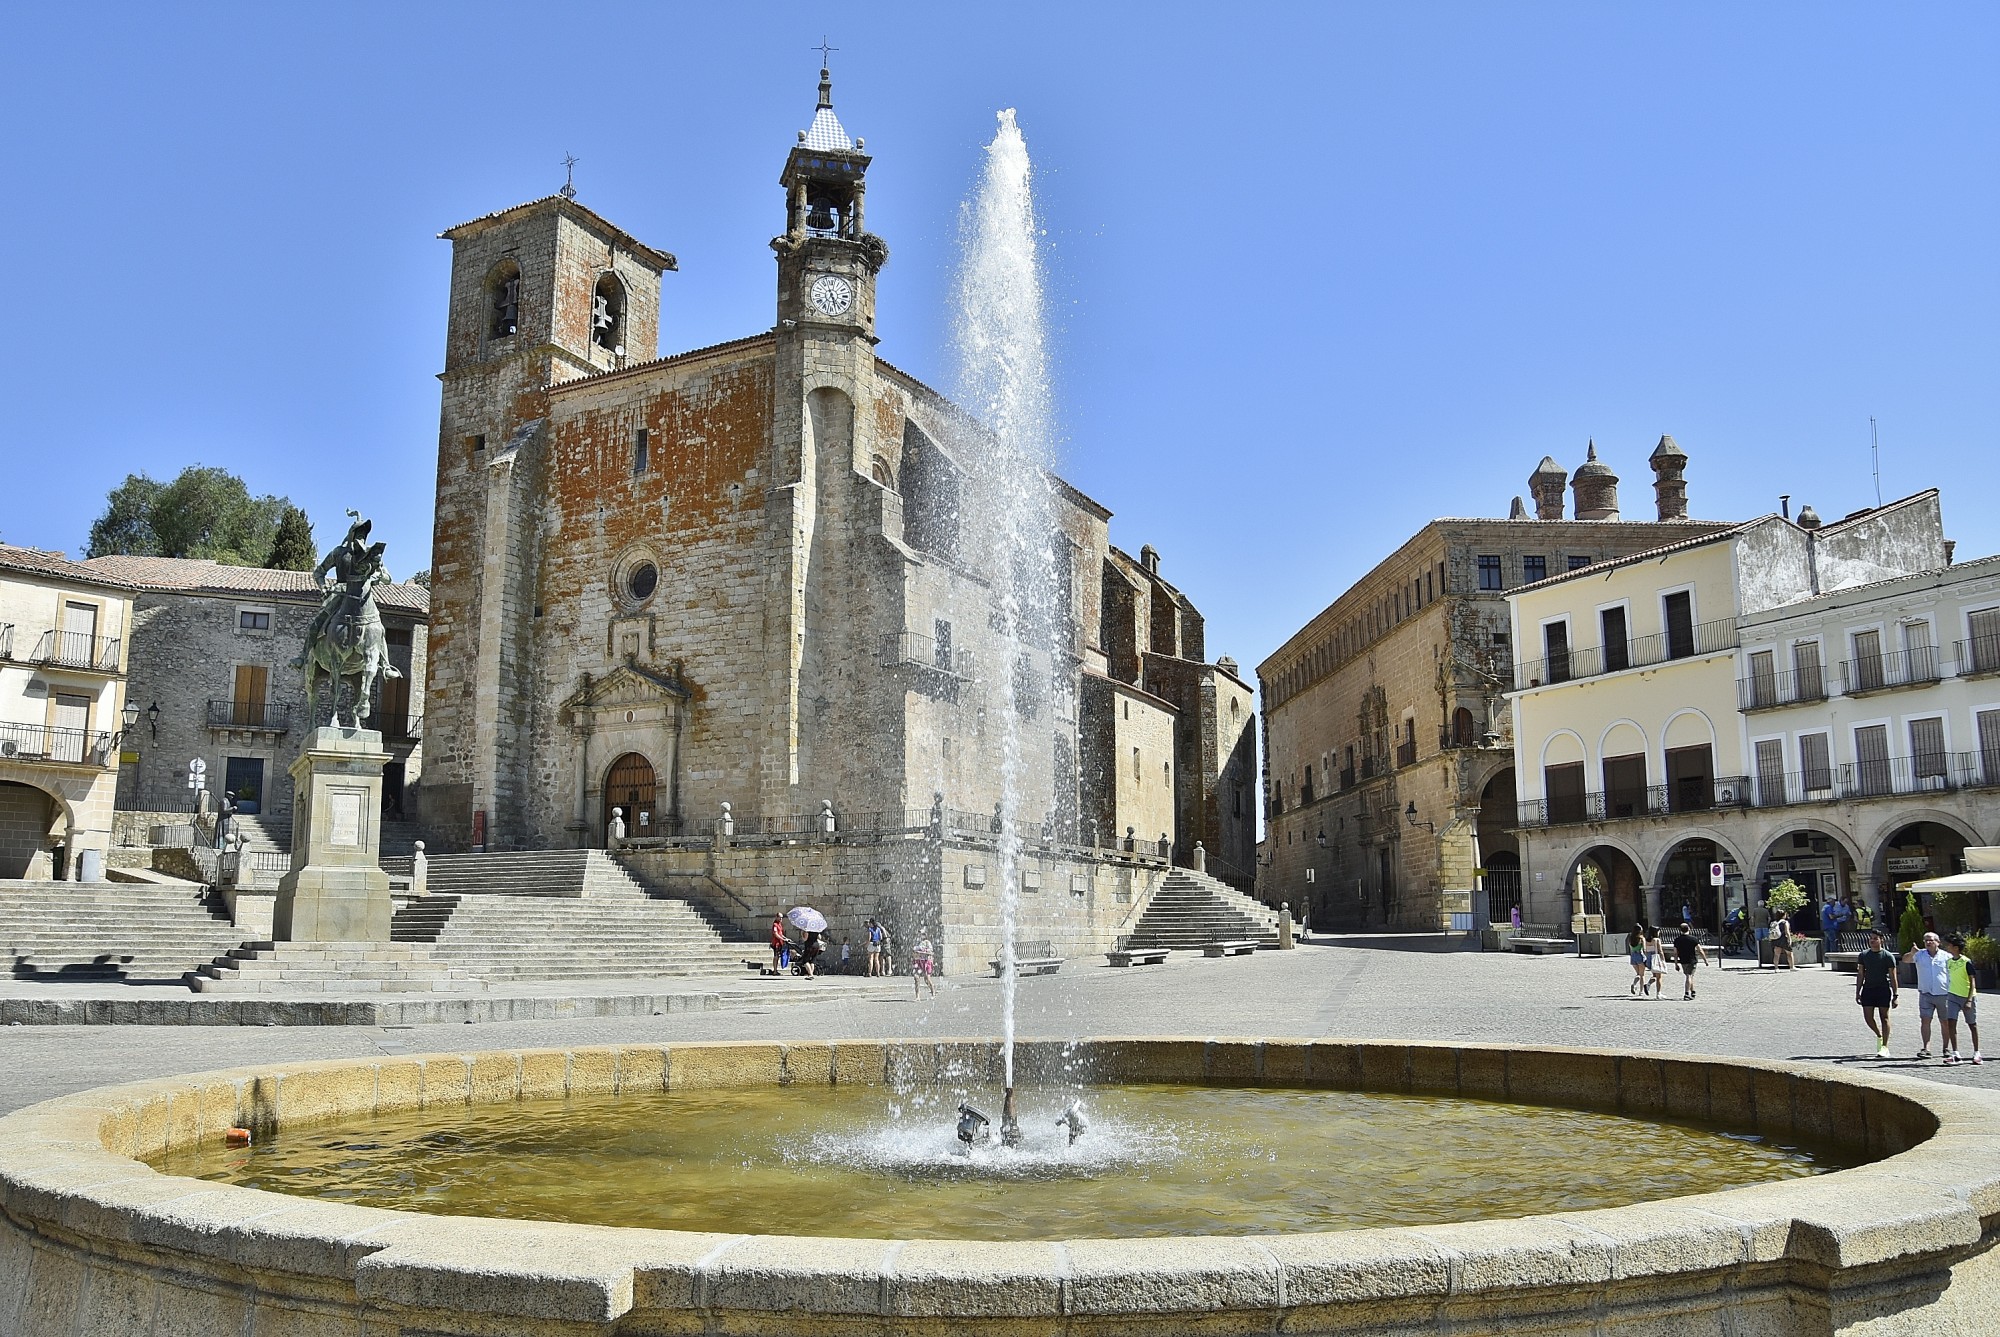 Foto: Centro histórico - Trujillo (Cáceres), España